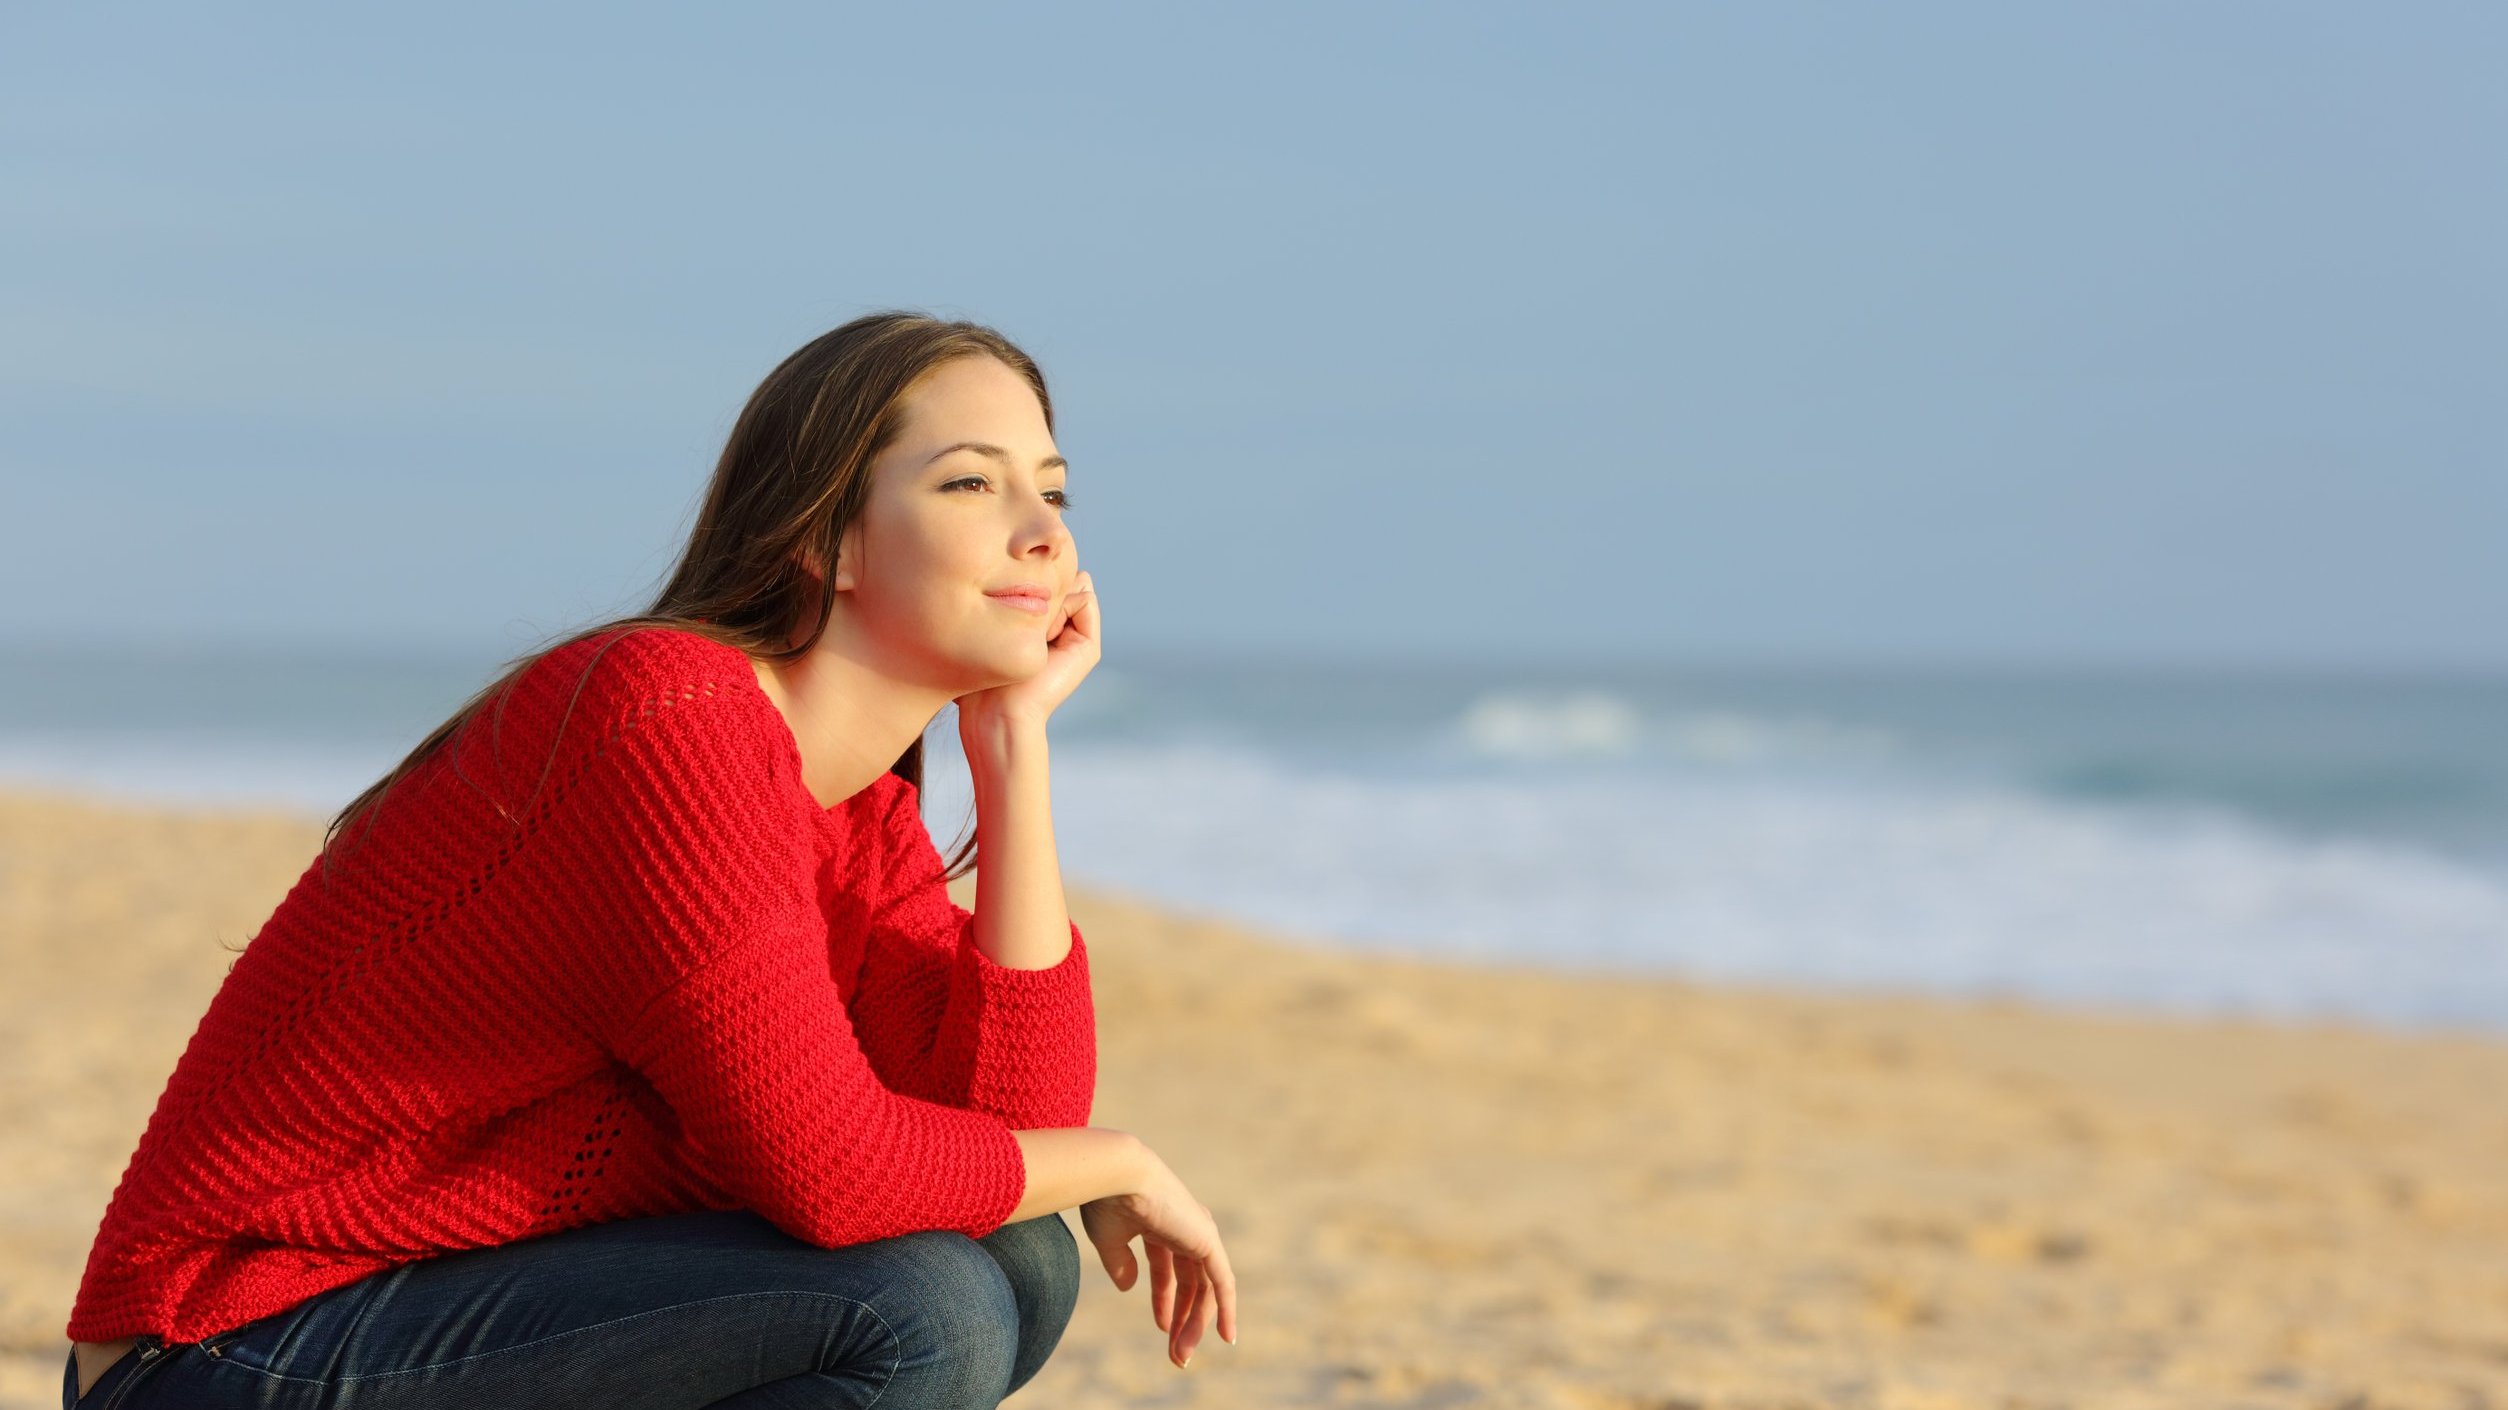 Mulher sentada na areia da praia olhando em direção ao horizonte com os braços apoiados no joelho